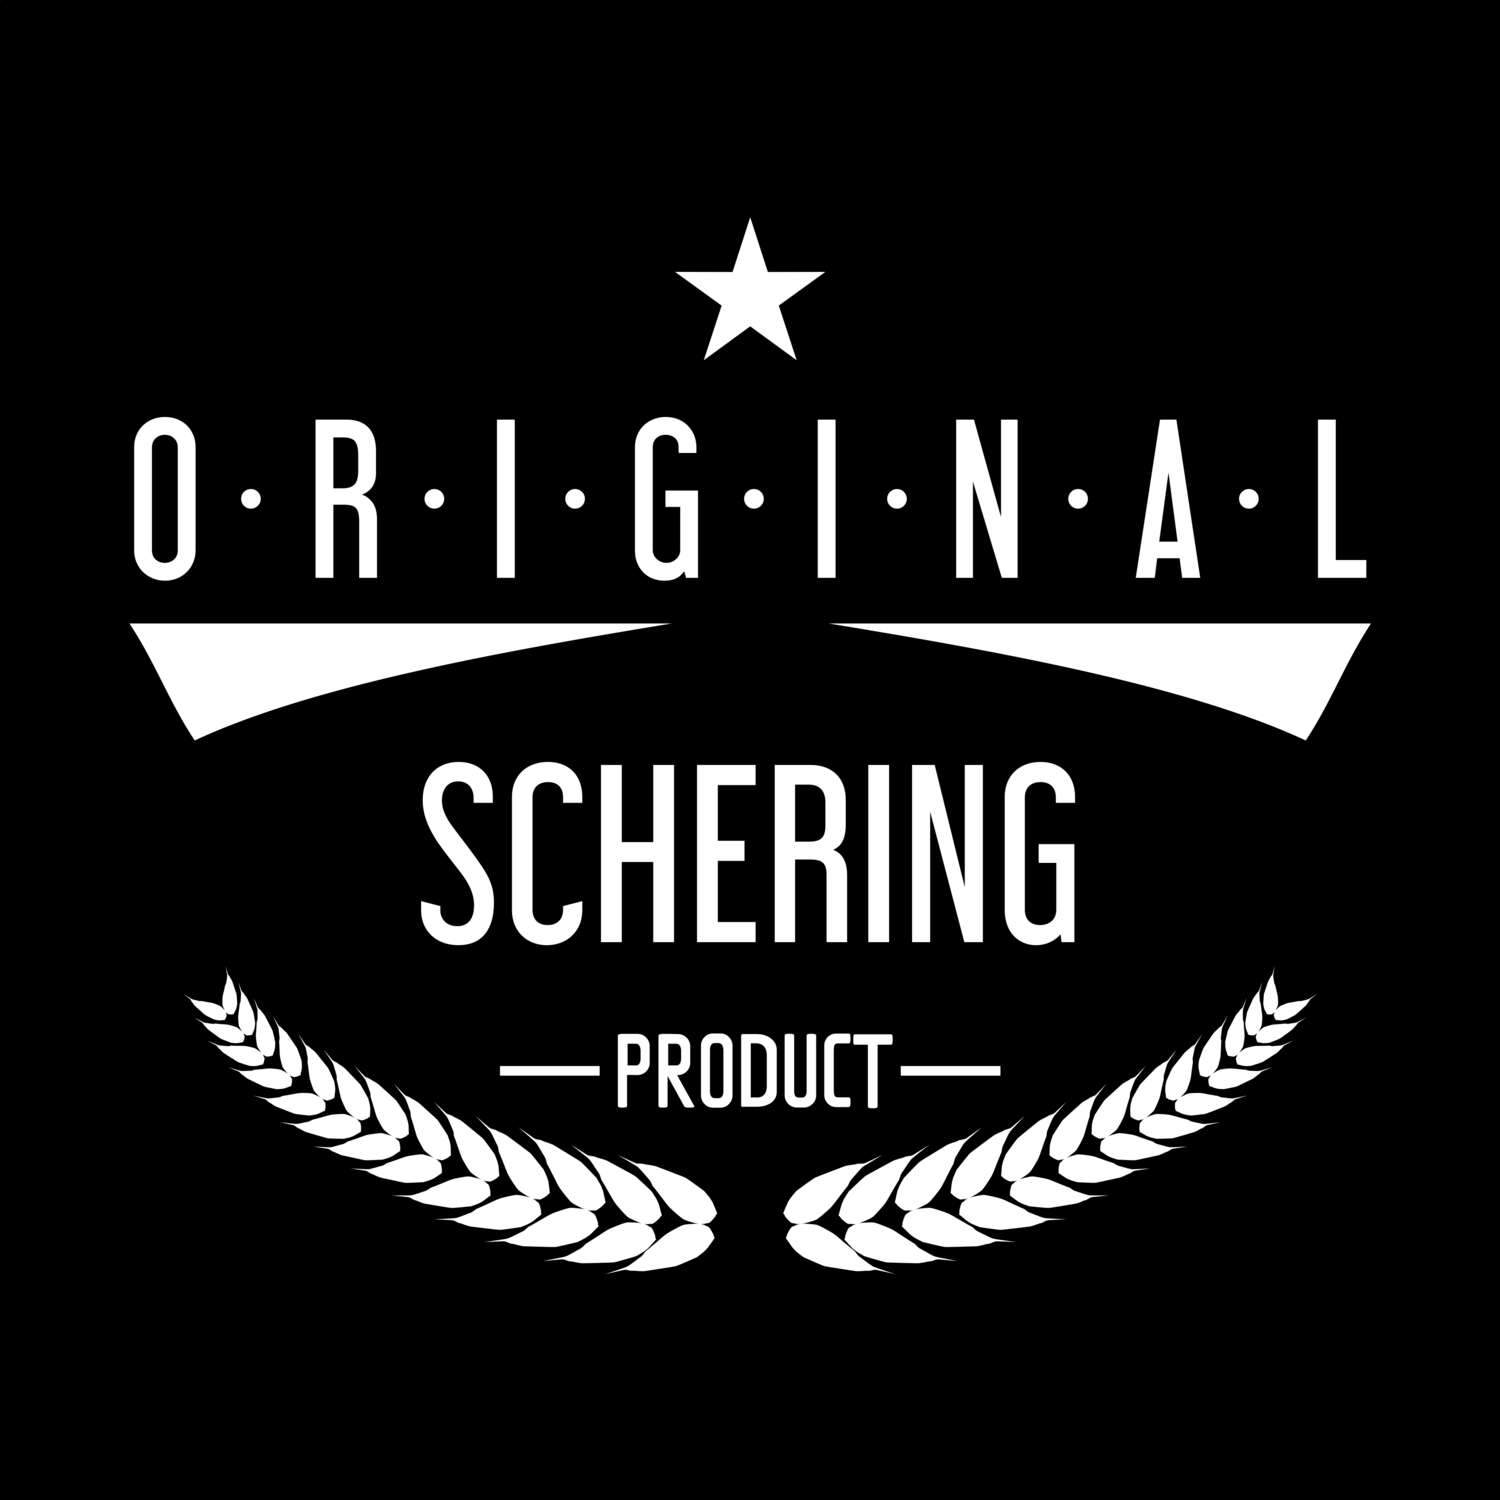 Schering T-Shirt »Original Product«